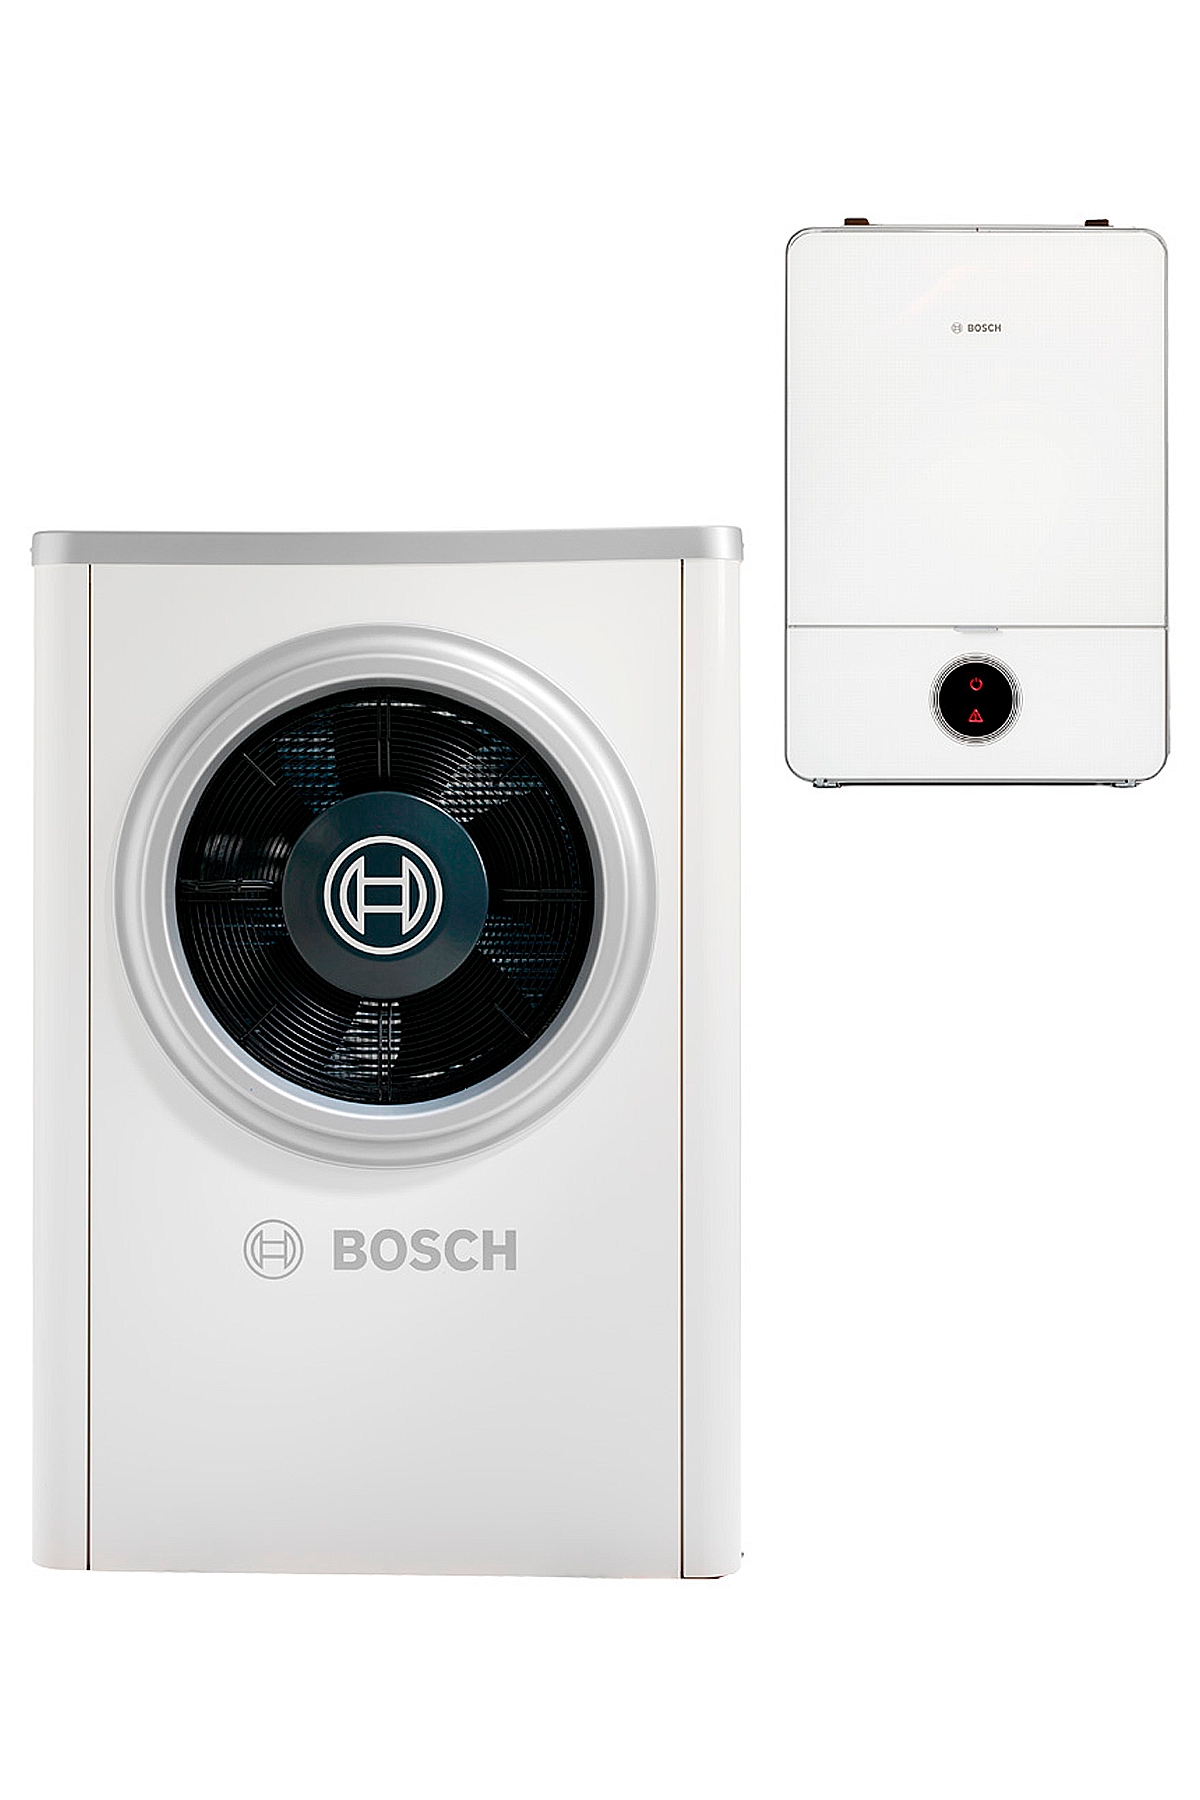 Ціна тепловий насос Bosch Compress 7000i AW 7 B в Одесі